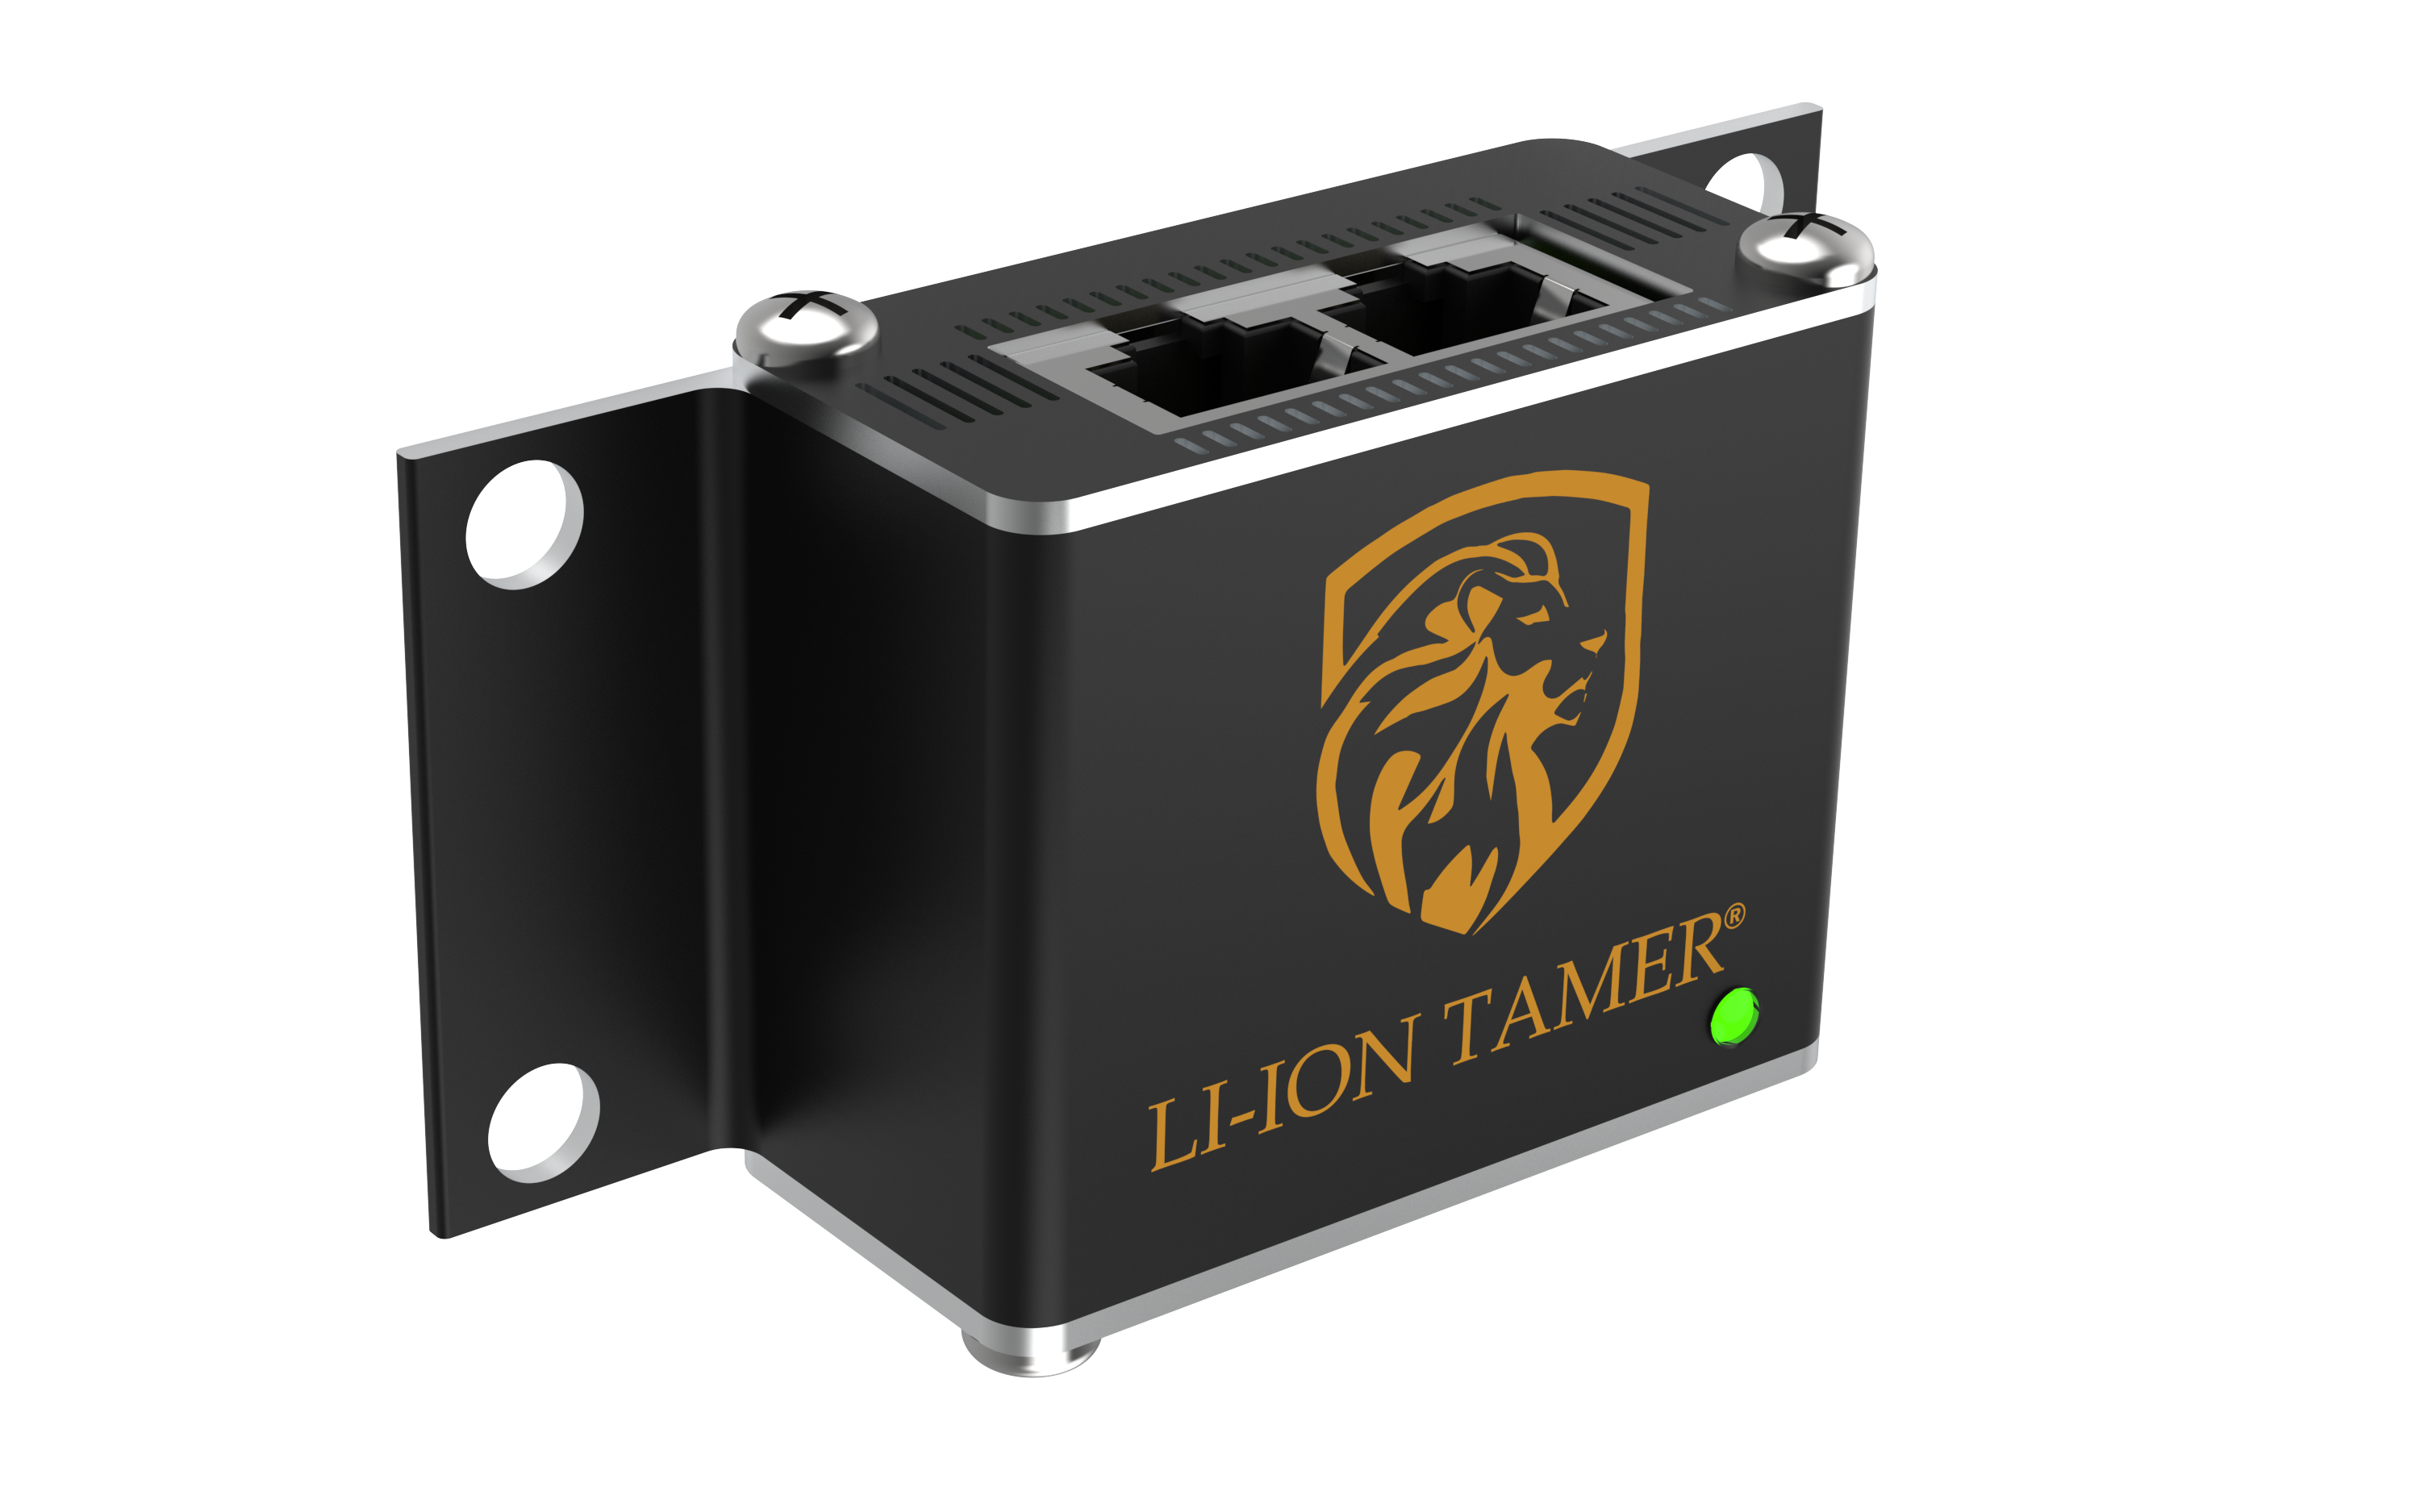 Li-Ion Tamer Monitoring Sensor Gen 3